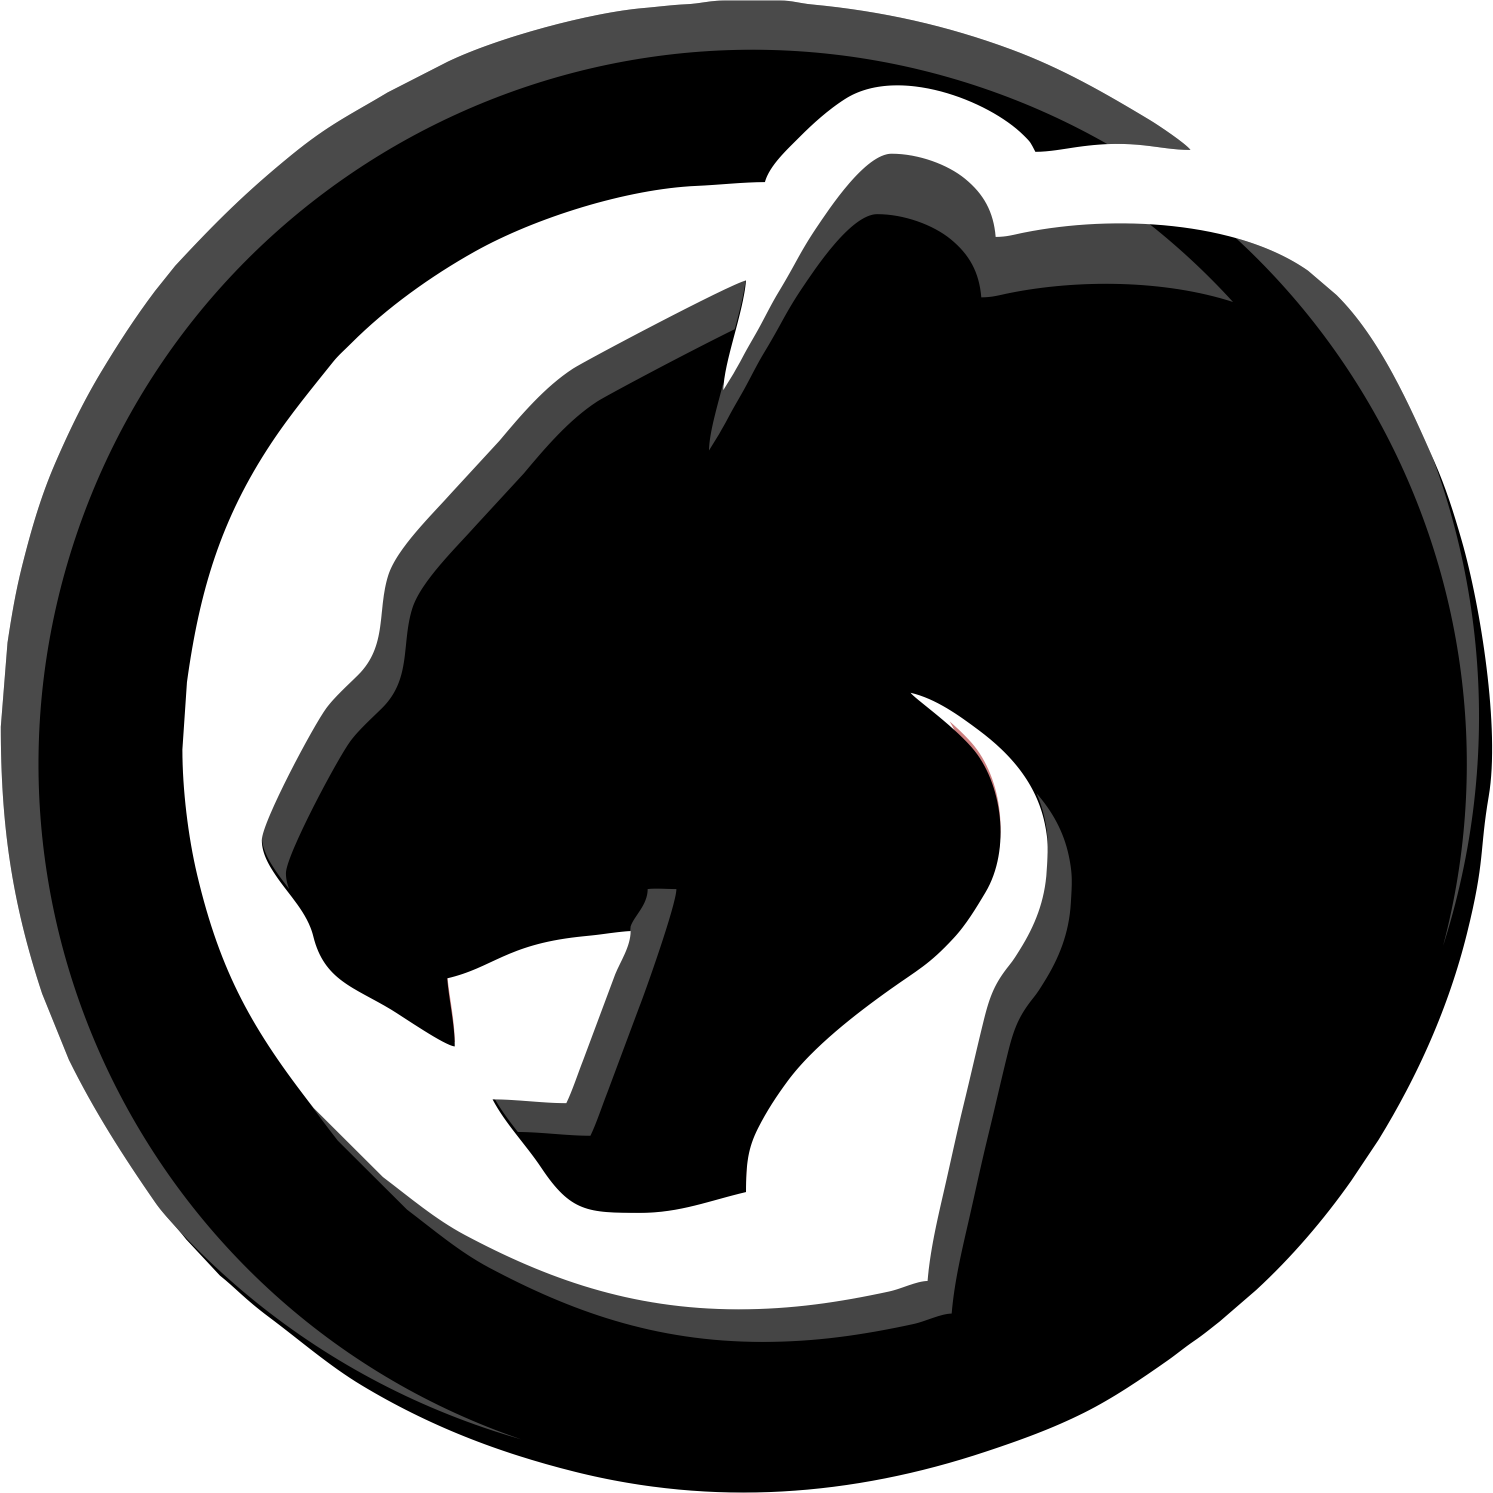 Avengers Black Panther Logo PNG Immagine di alta qualità